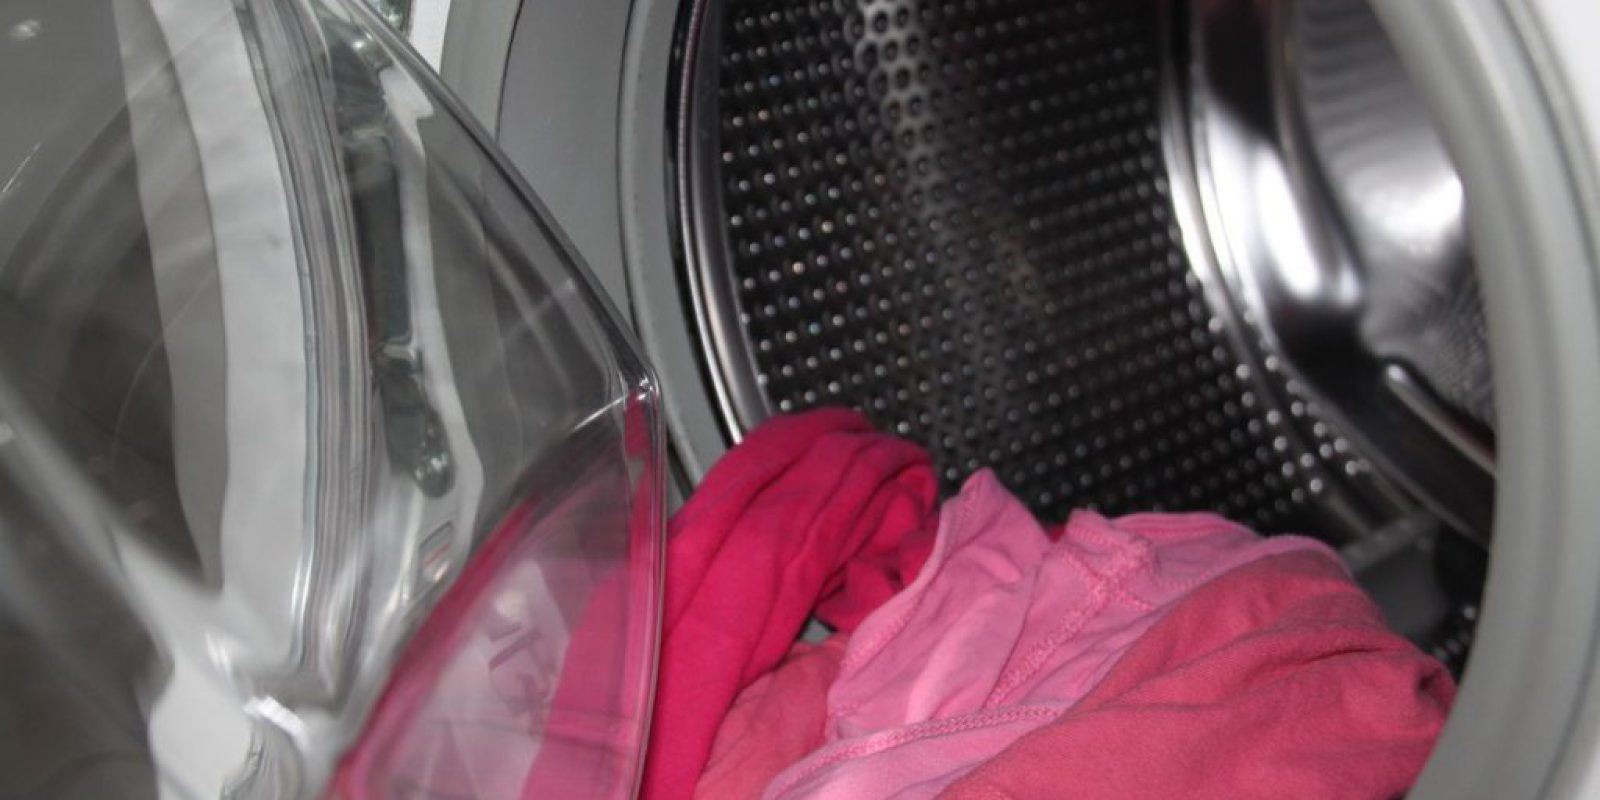 Czyszczenie pralki - sprawdzone sposoby i sekrety ekspertów